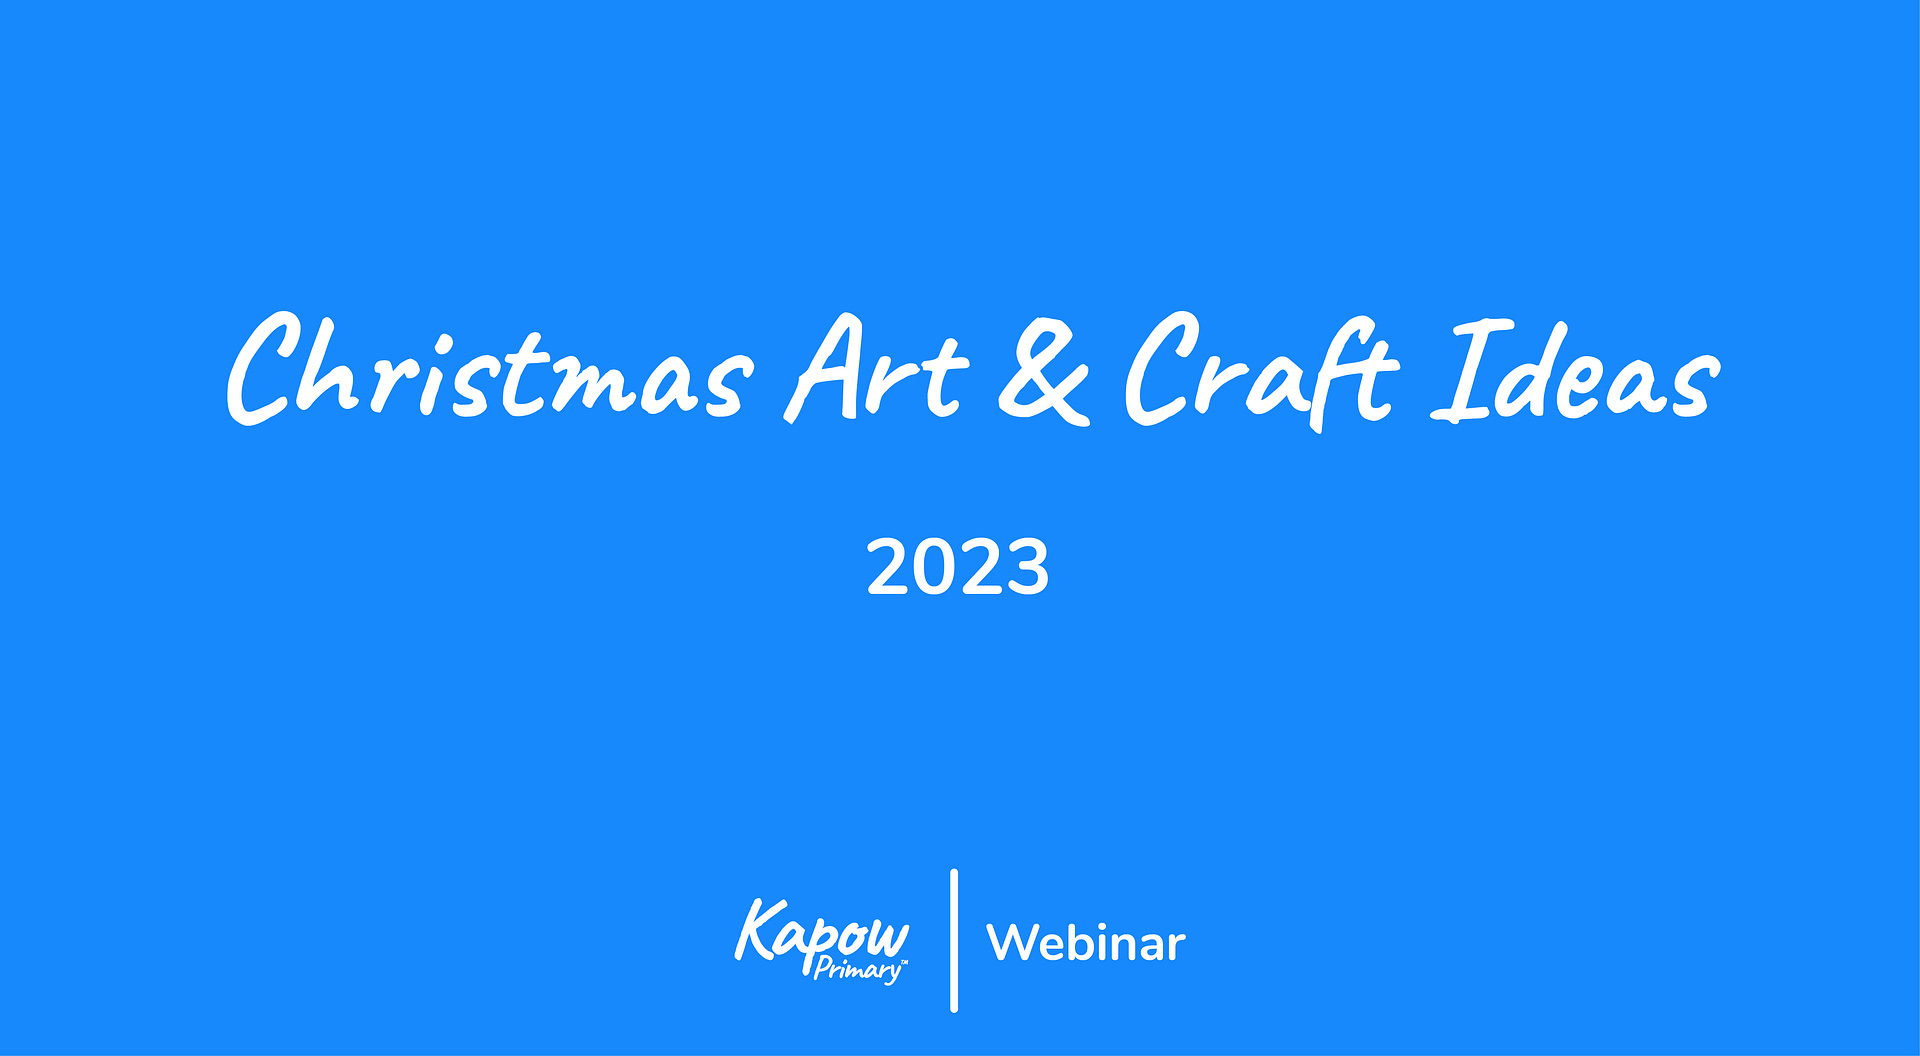 Webinar: Christmas Art & Craft Ideas 2023